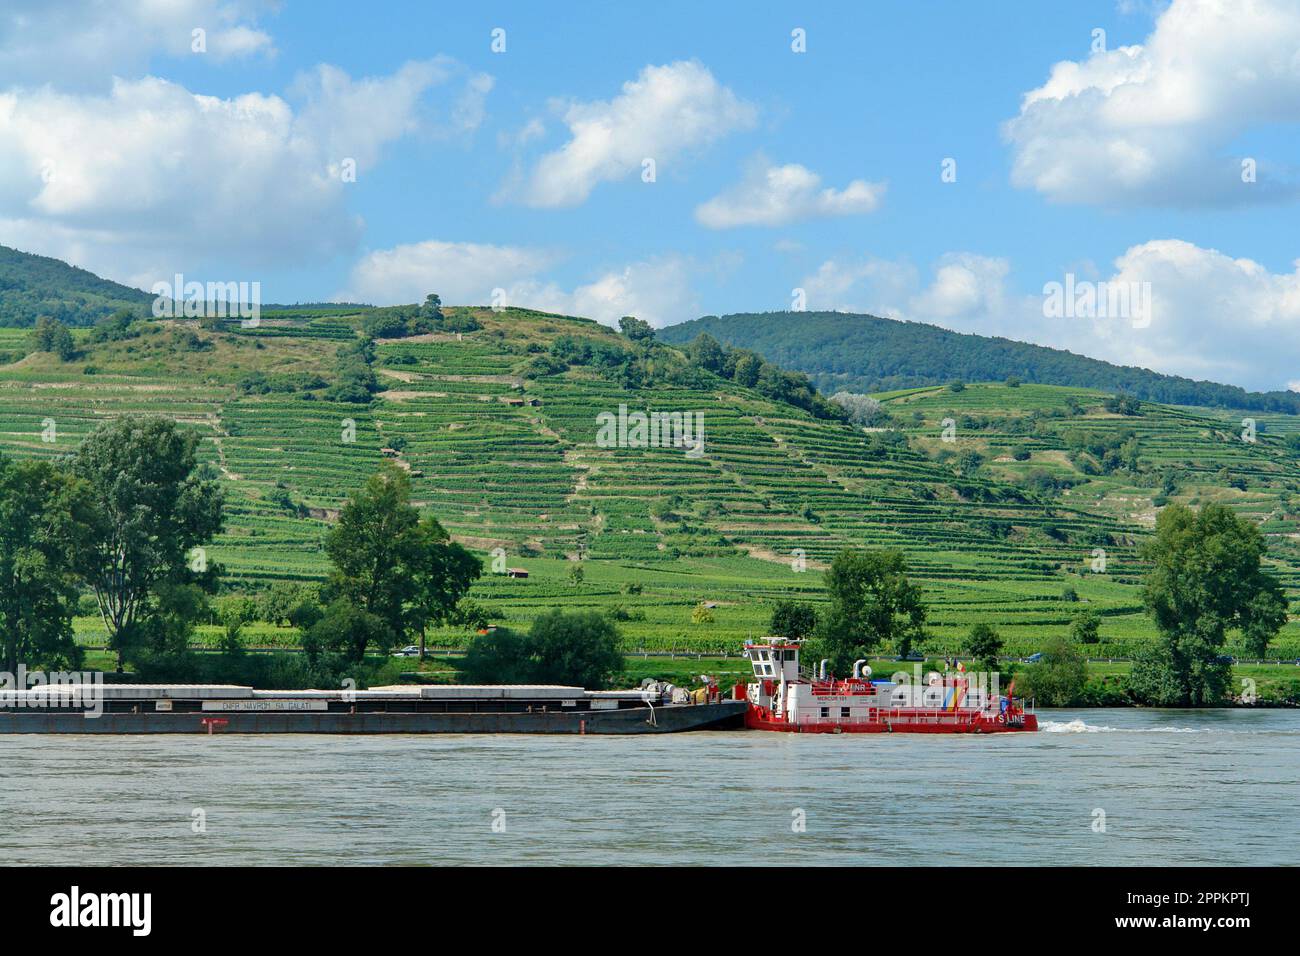 Europa, Austria, Ã–sterreich, NiederÃ¶sterreich, Wachau, Patrimonio mondiale dell'UNESCO, chiatta, Danubio, vigneti Foto Stock